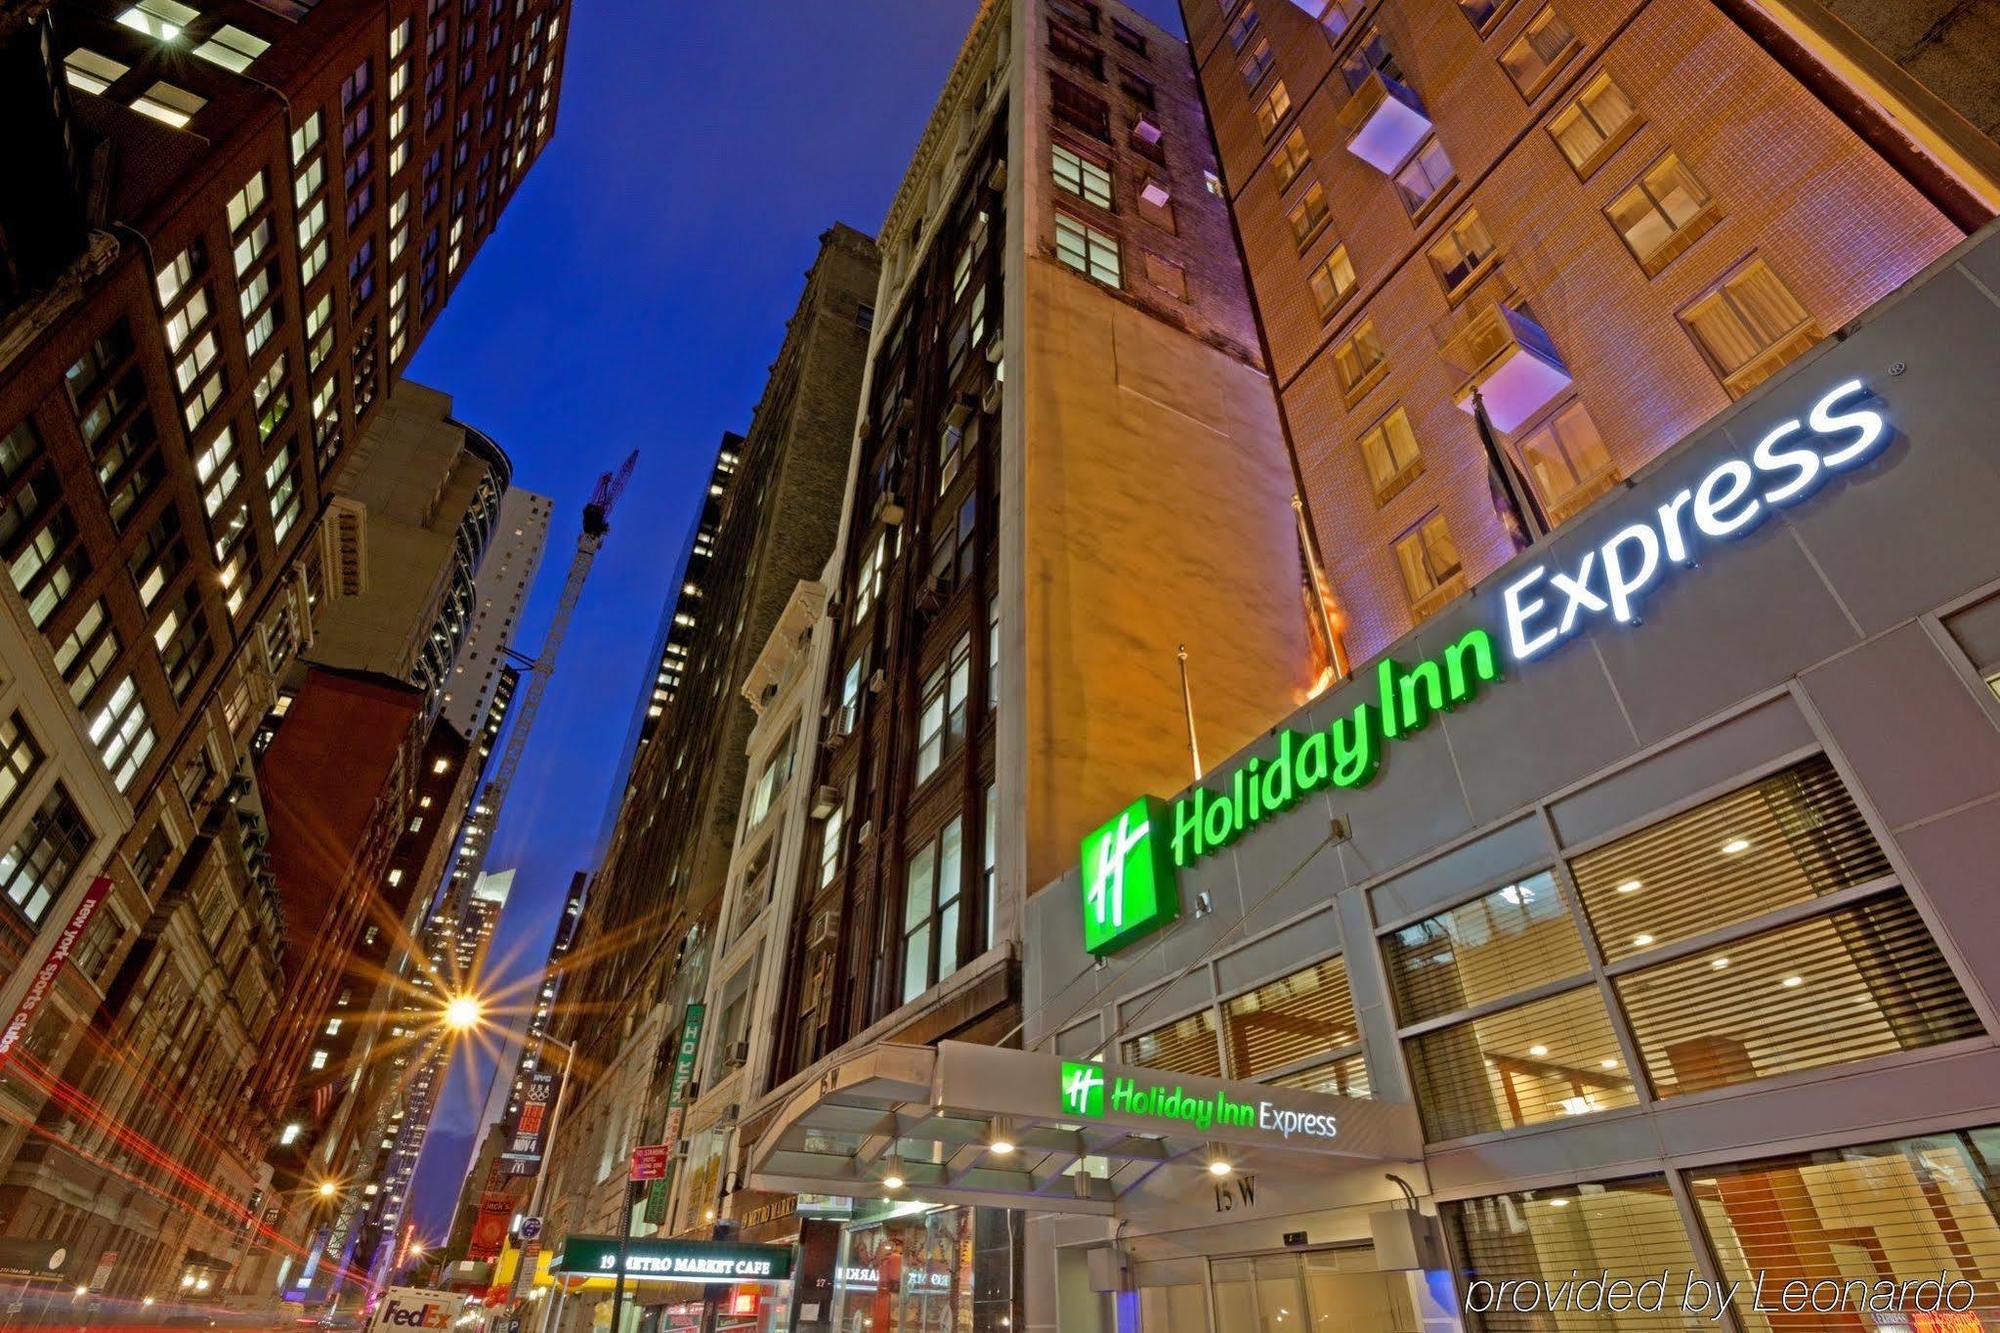 Hotel Citadines Connect Fifth Avenue Nowy Jork Zewnętrze zdjęcie